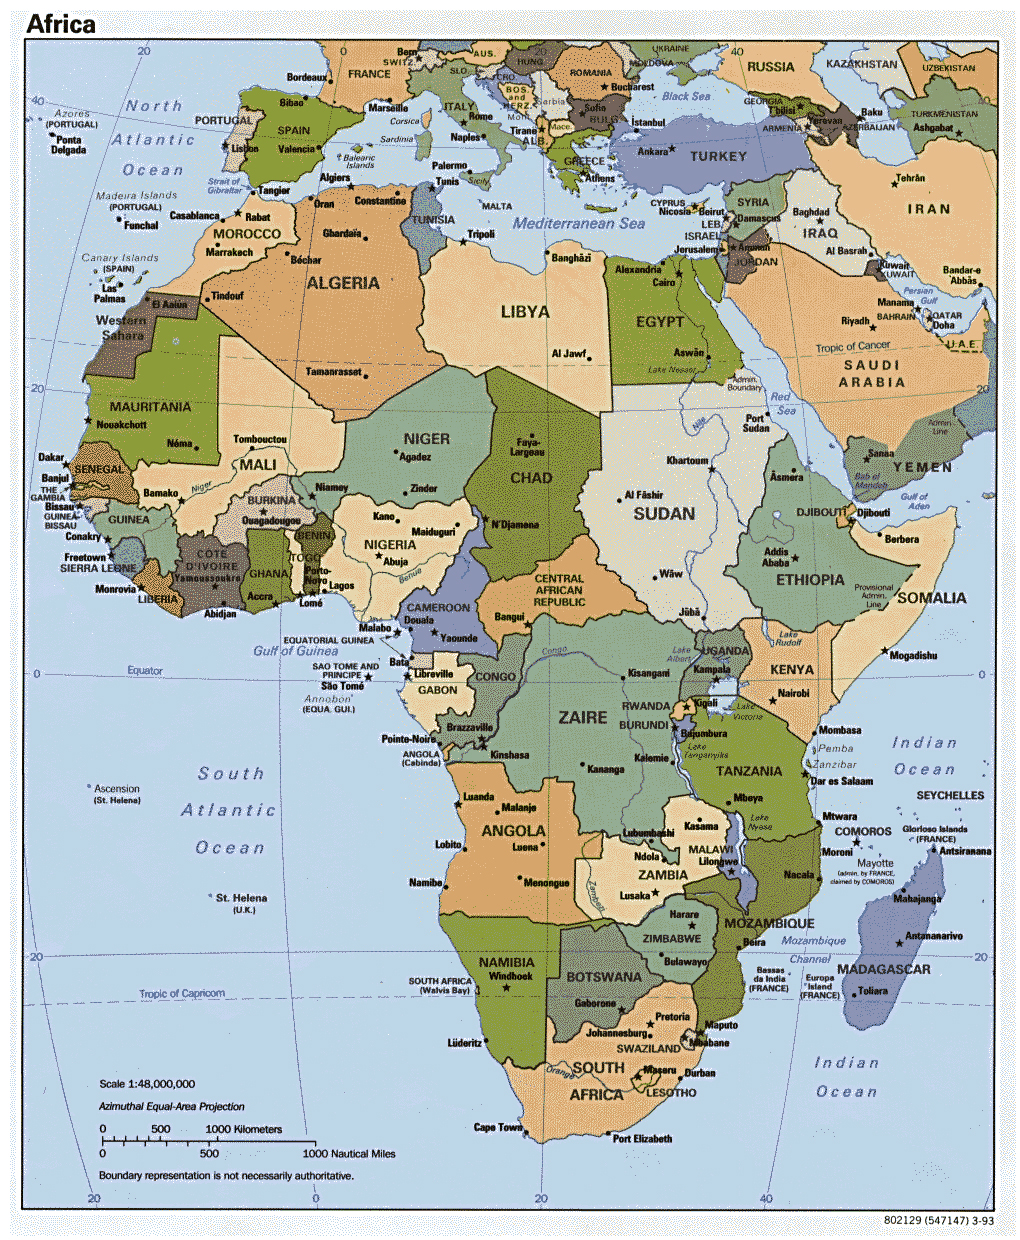 Mapa Político Detallada De África Con Las Principales Ciudades Y Capitales 1993 África 3622